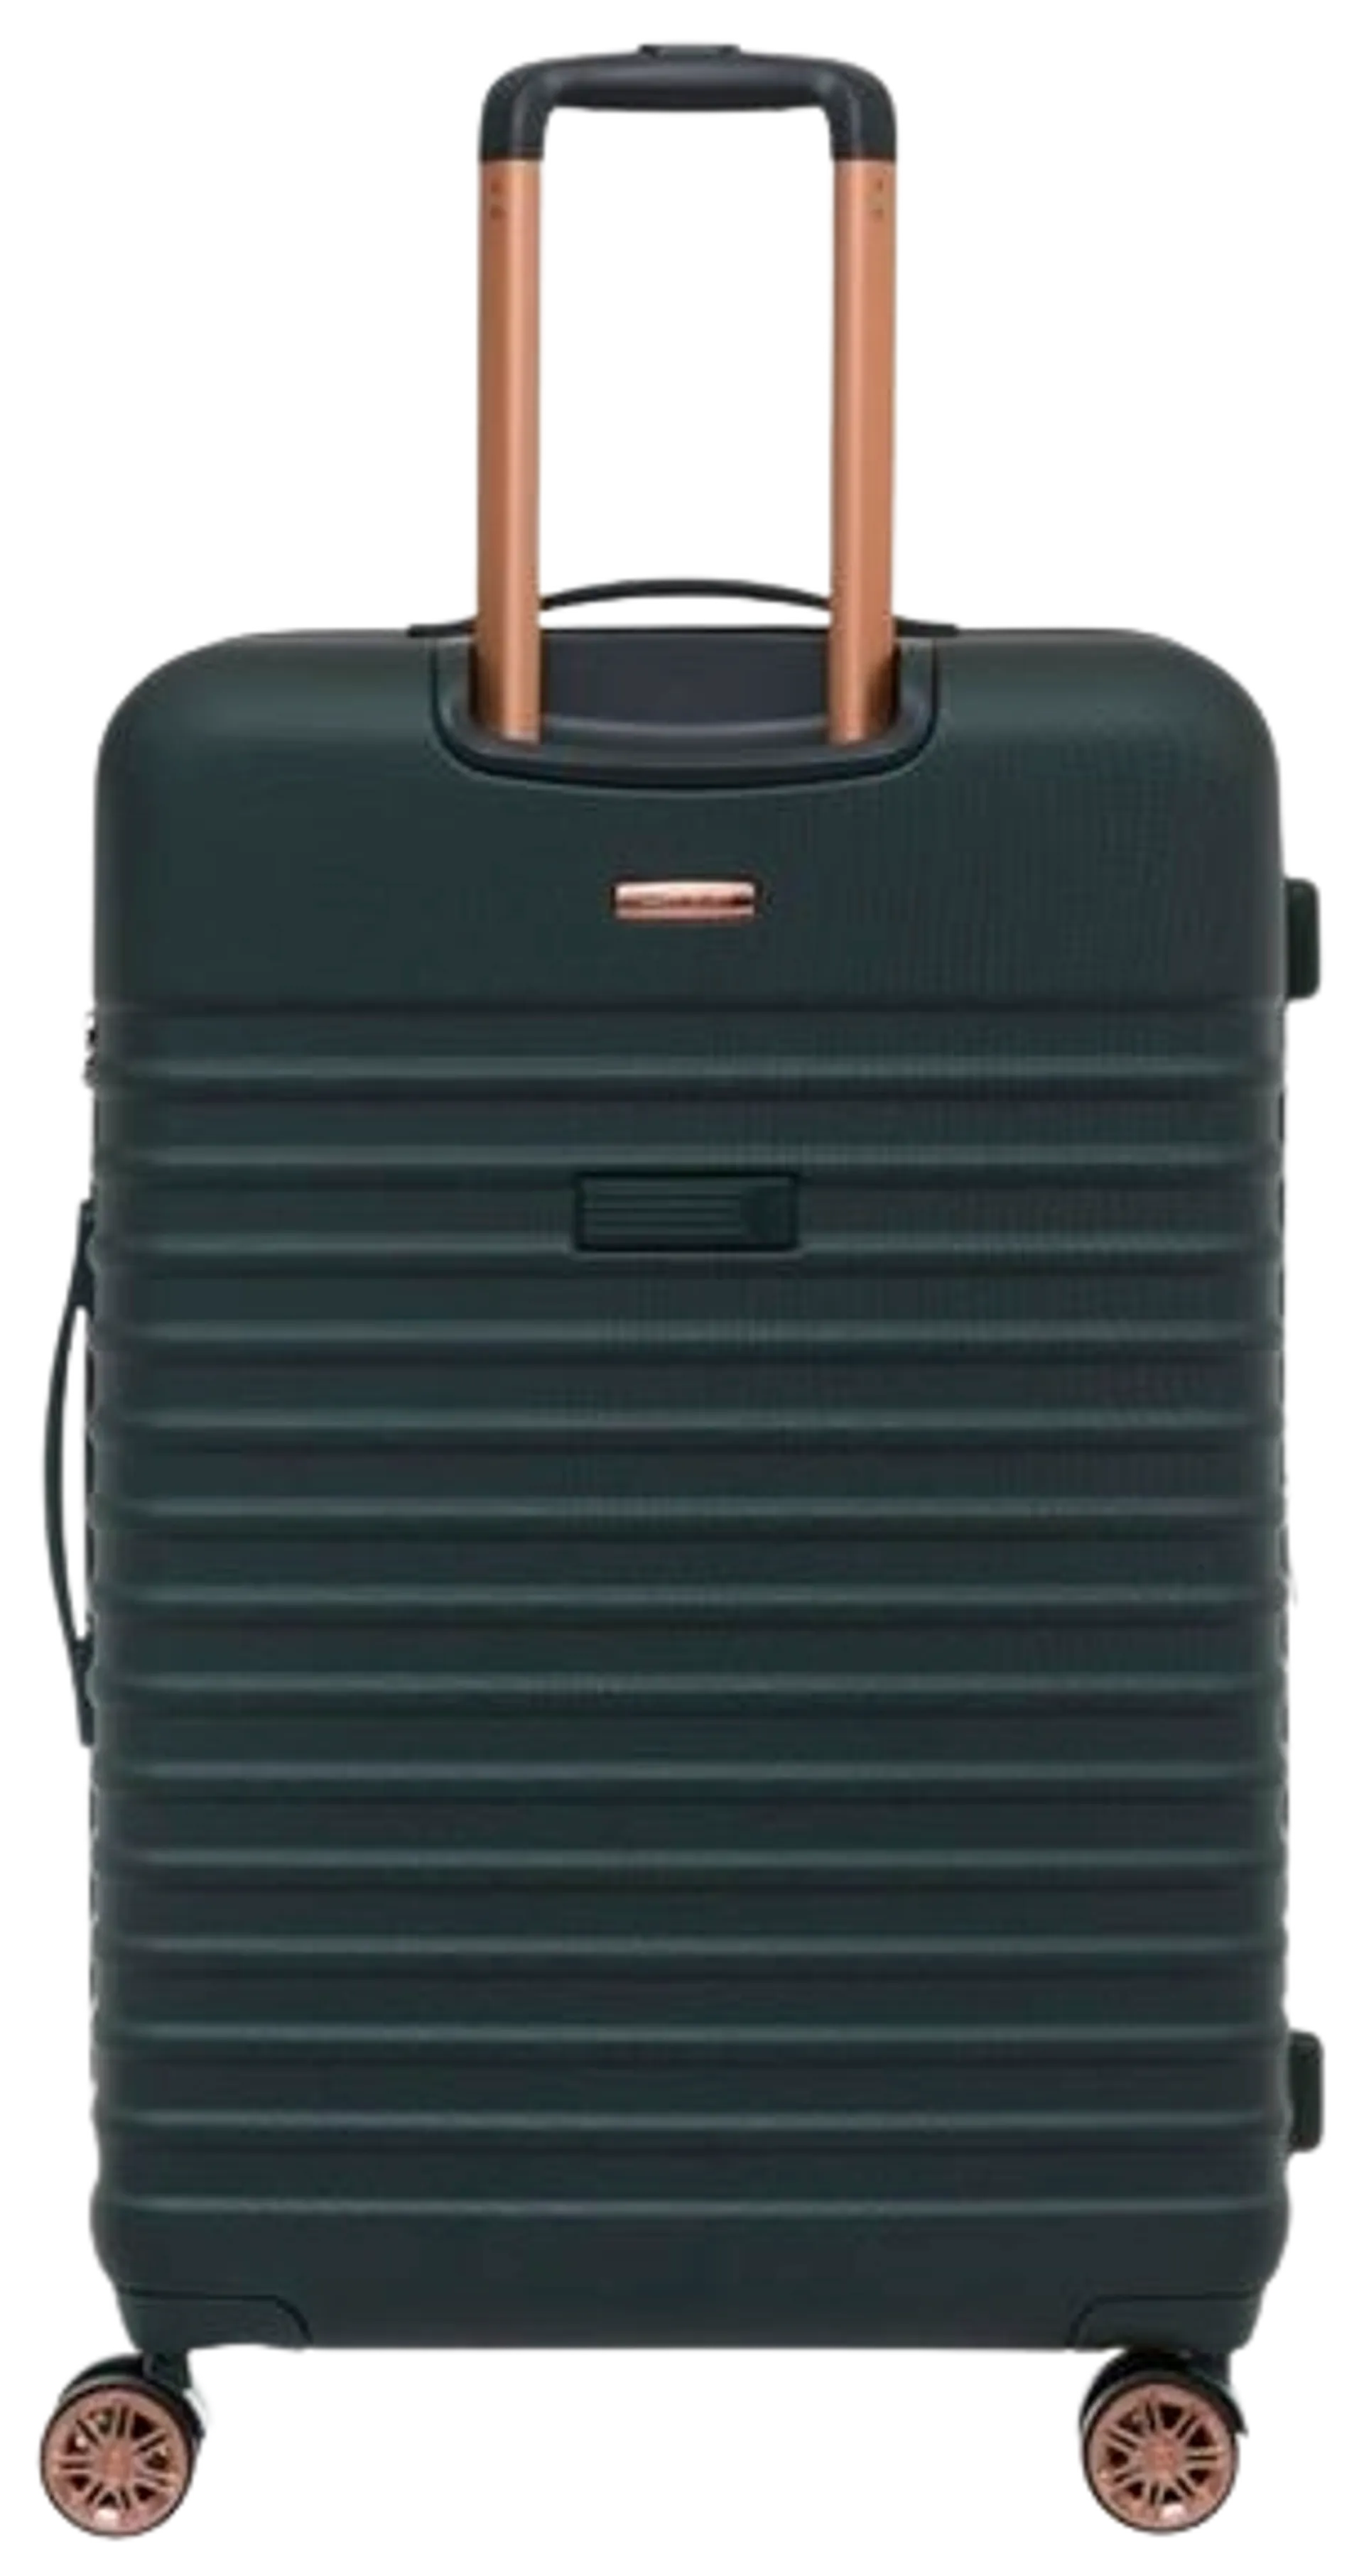 Cavalet matkalaukku Pasadena L 73 cm, vihreä - 3